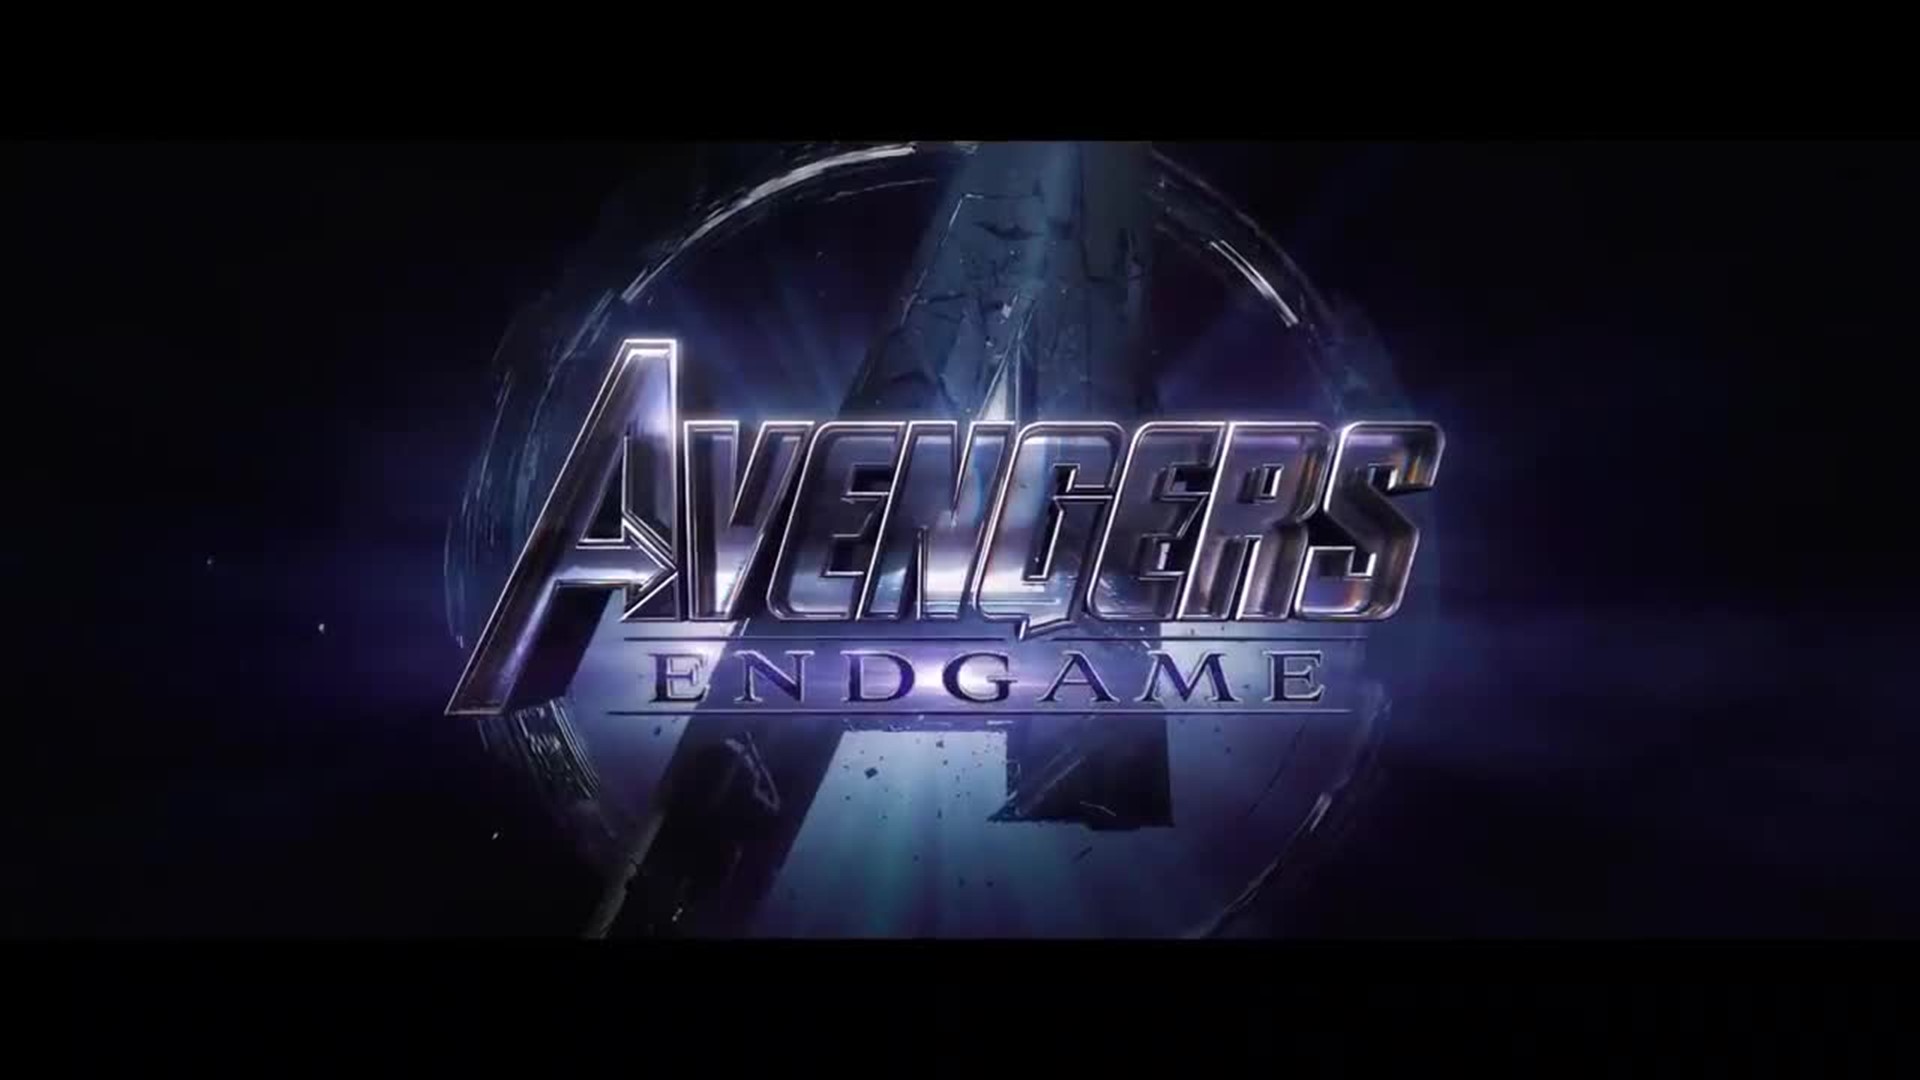 Marvel's "Avengers: Endgame" trailer